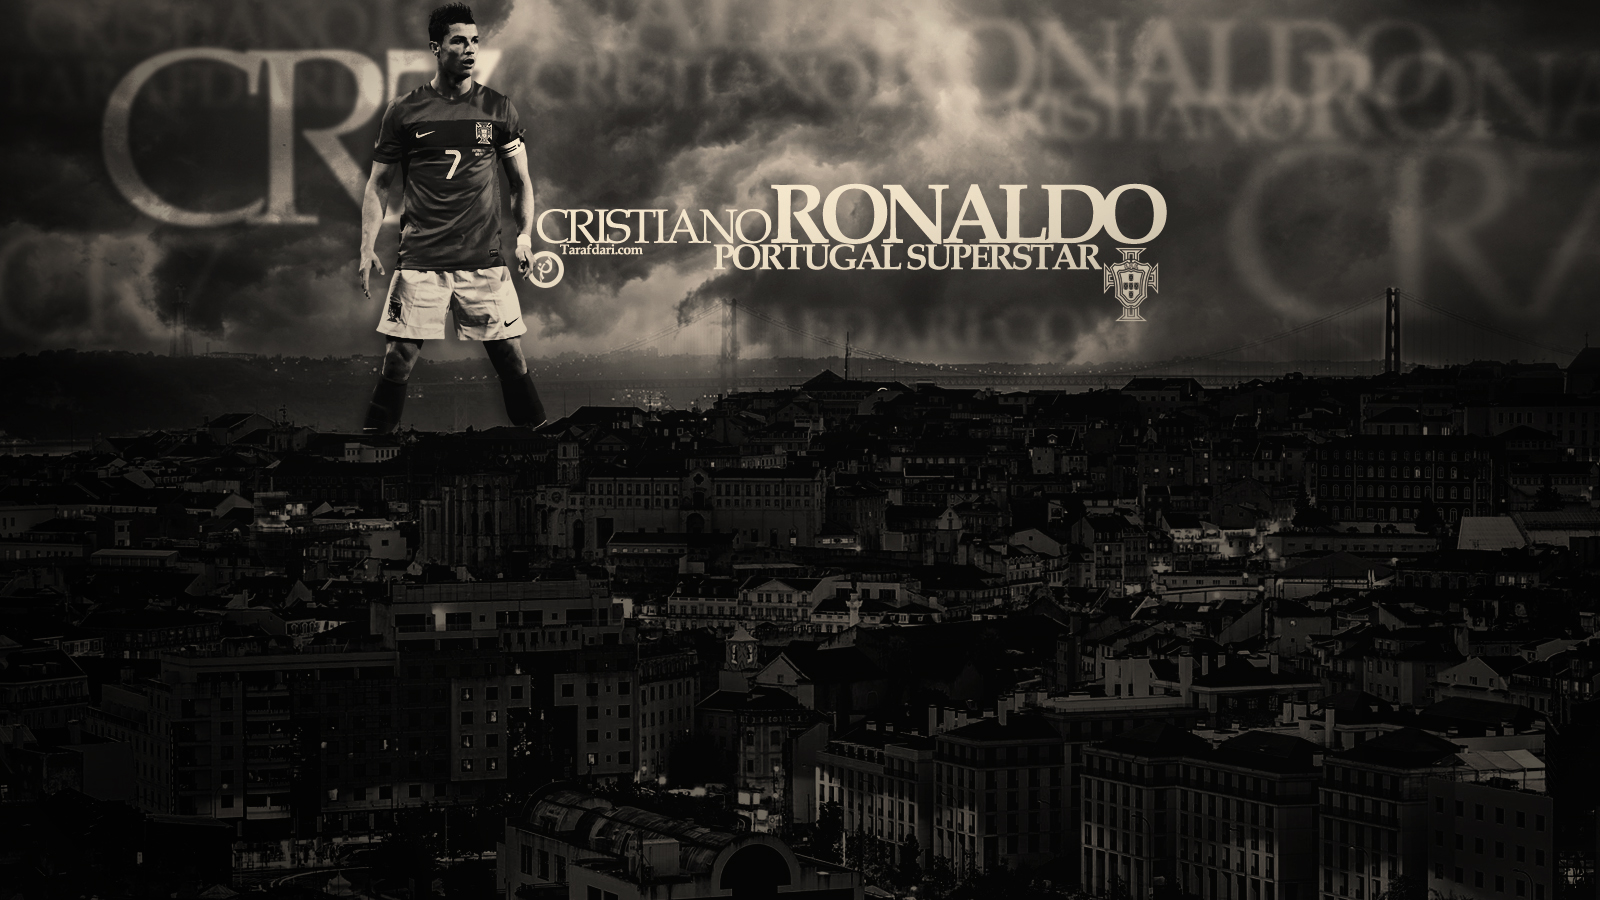 پوستر اختصاصی طرفداری؛ کریستیانو رونالدو،فوق ستاره ی پرتغالی